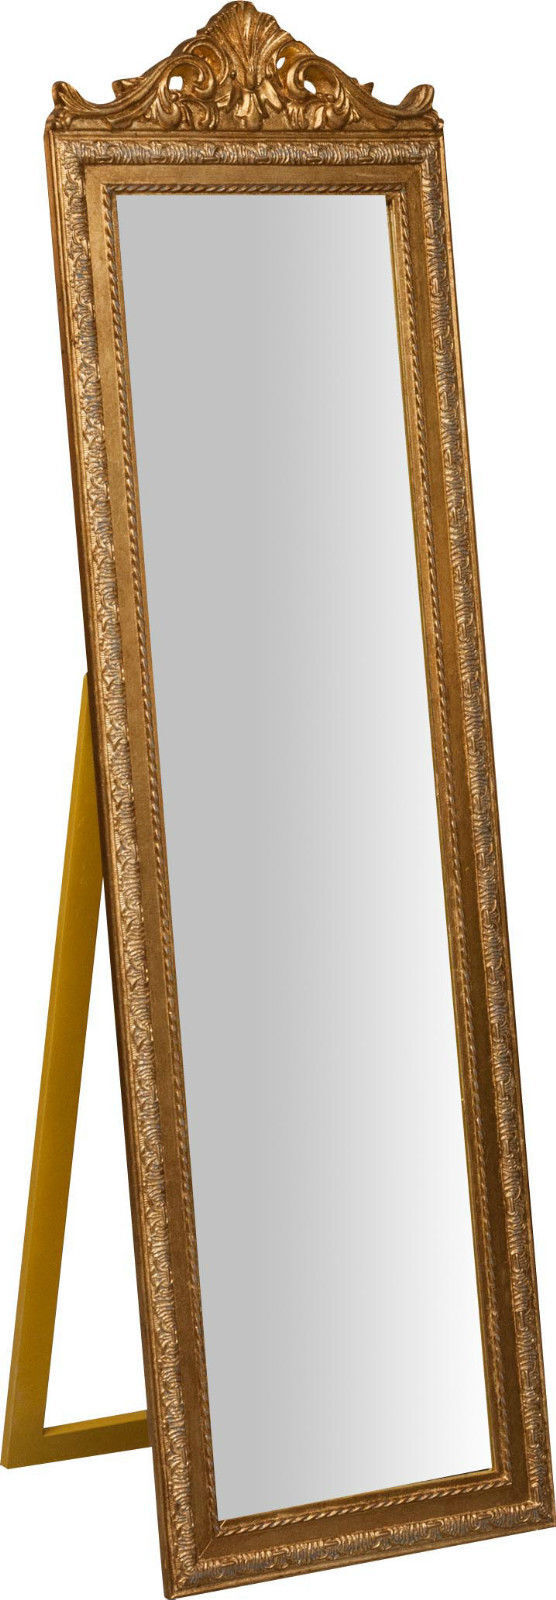 Specchiera da terra in legno rifinito foglia oro BAROCCO 140 cm x 40 cm